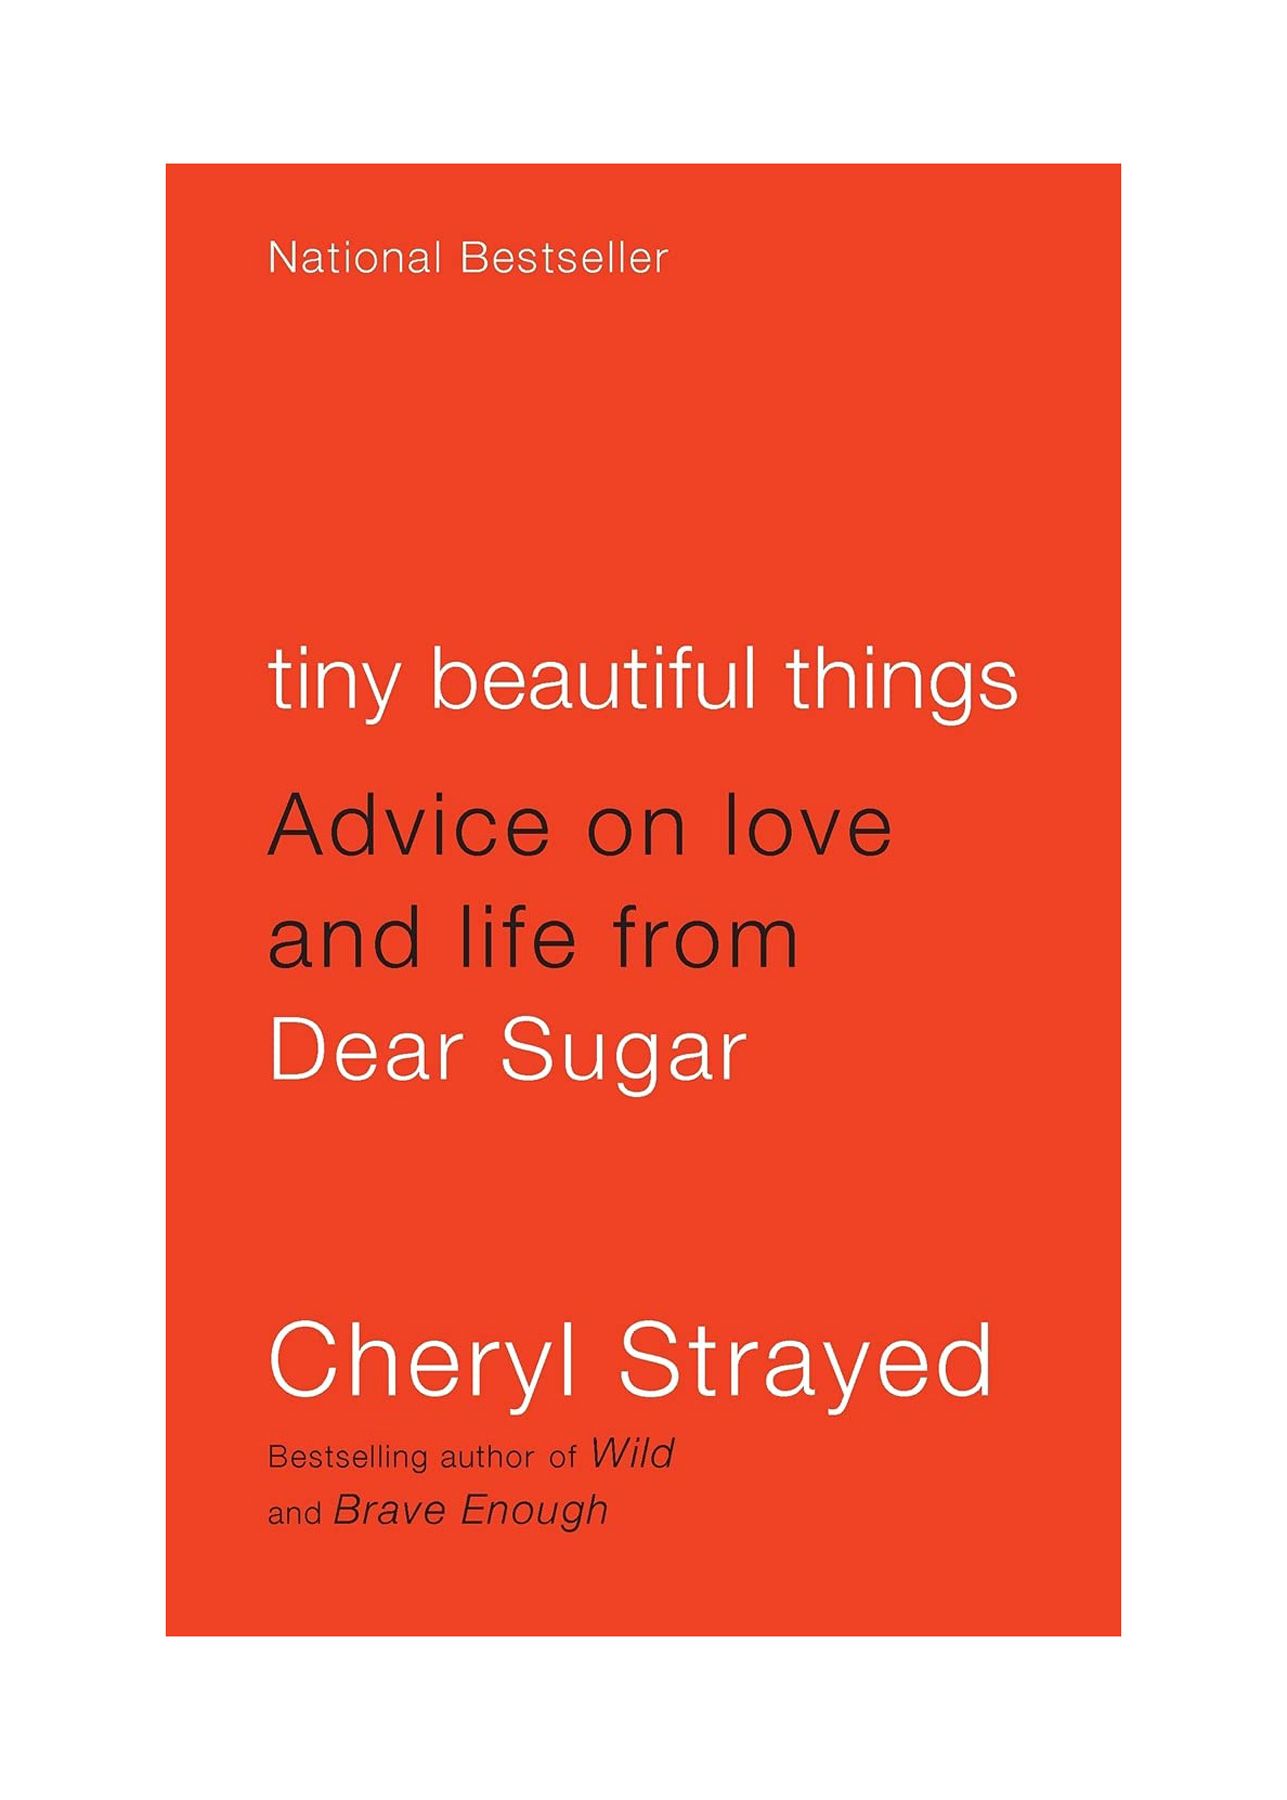 Kirjoja eroamiseen: Pieniä kauniita asioita: Cheryl Strayedin neuvoja rakkaudesta ja elämästä Dear Sugarilta